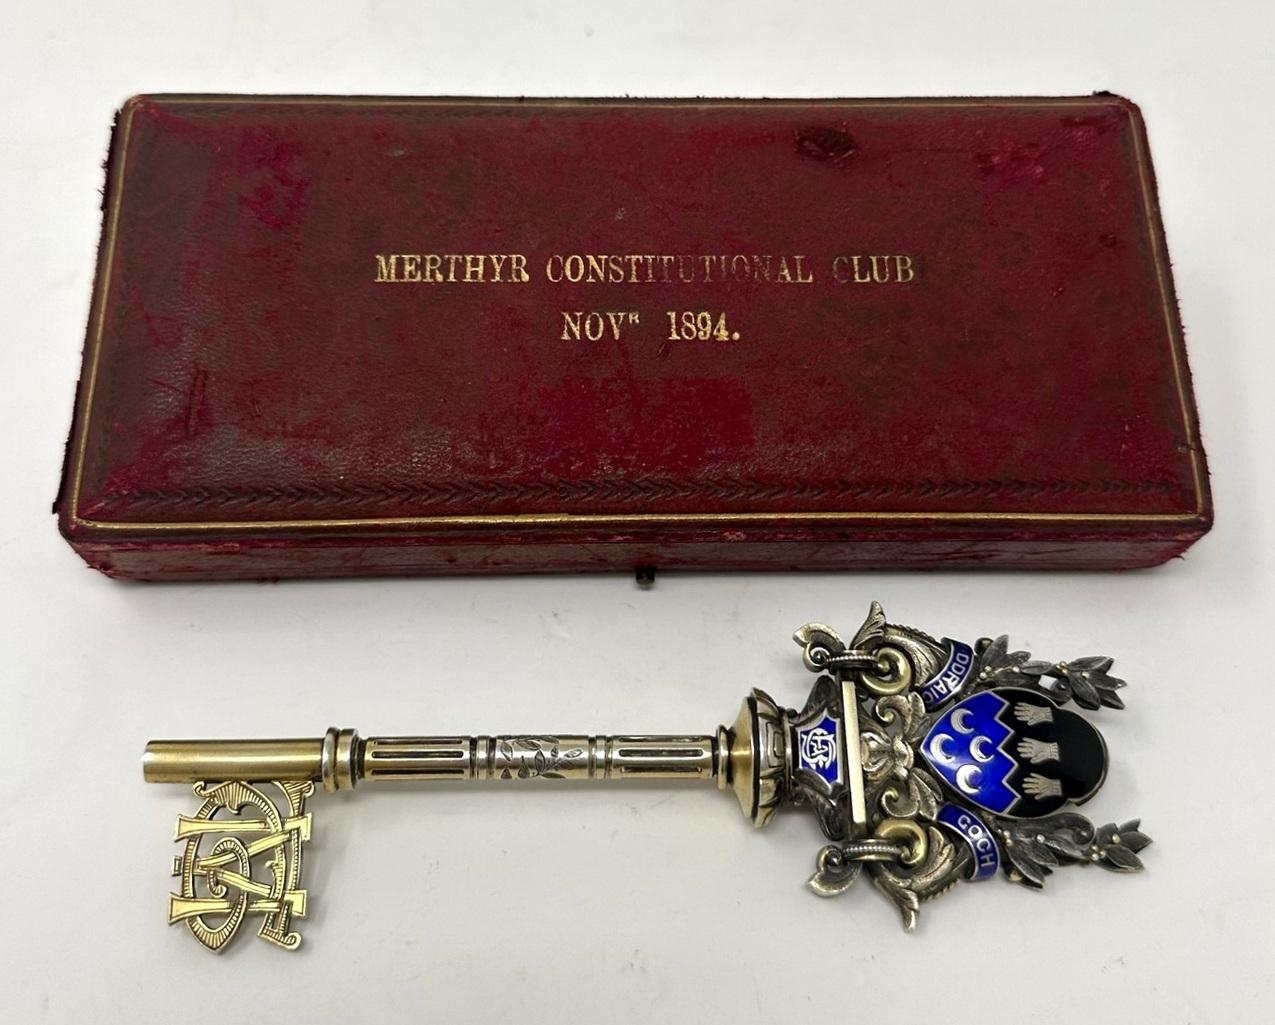 Ein äußerst ungewöhnlicher vergoldeter silberner Präsentations-Türschlüssel, der 1894 für den Merthyr Constitutional Club in Wales, England, modelliert wurde, komplett mit seiner originalen seidengefütterten Schachtel.  

Der extrem verzierte Griff